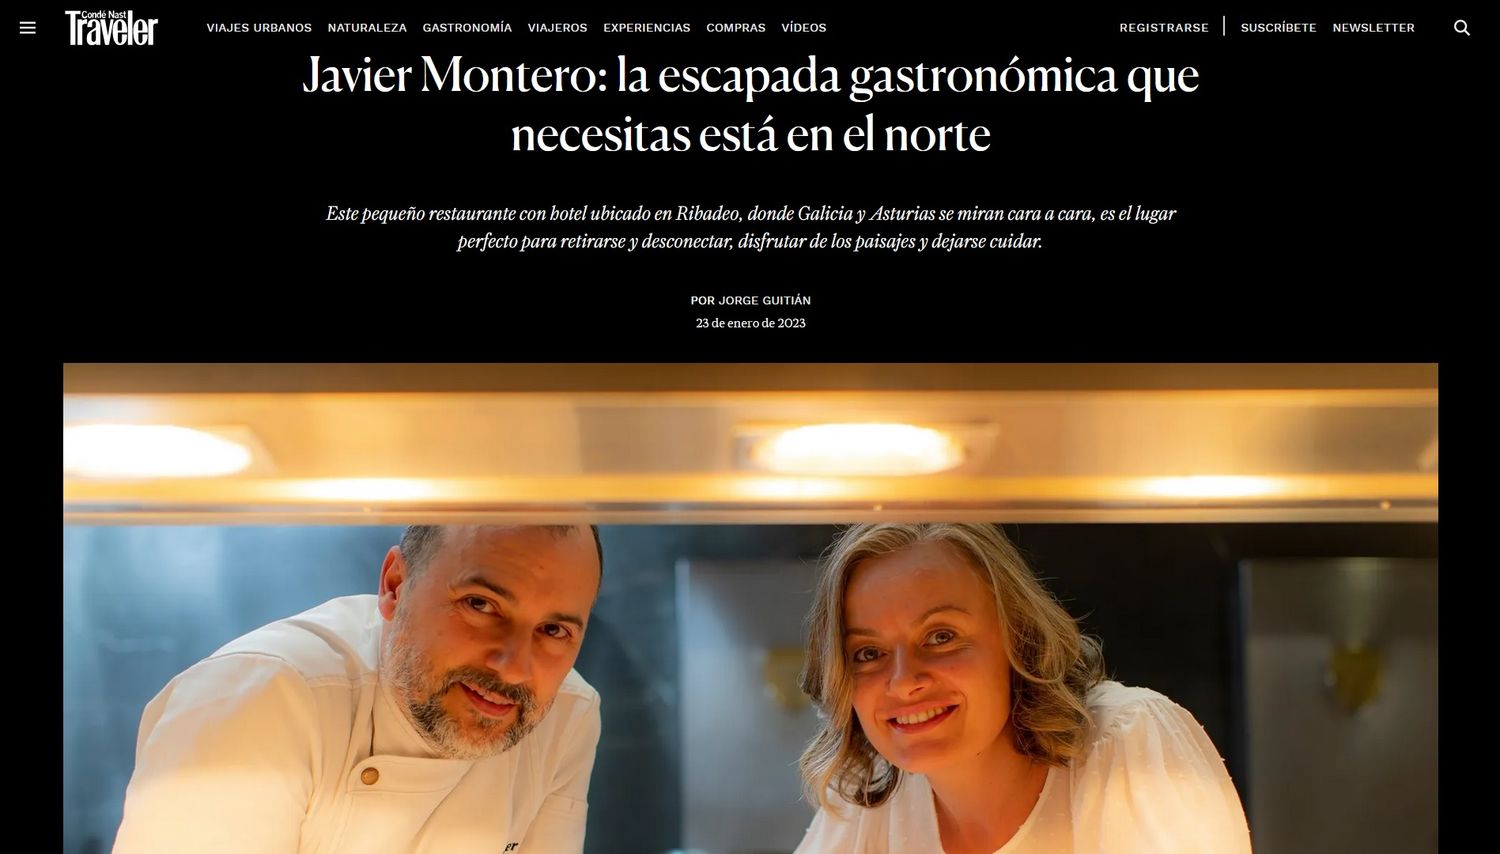 Javier Montero: la escapada gastronómica que necesitas está en el norte